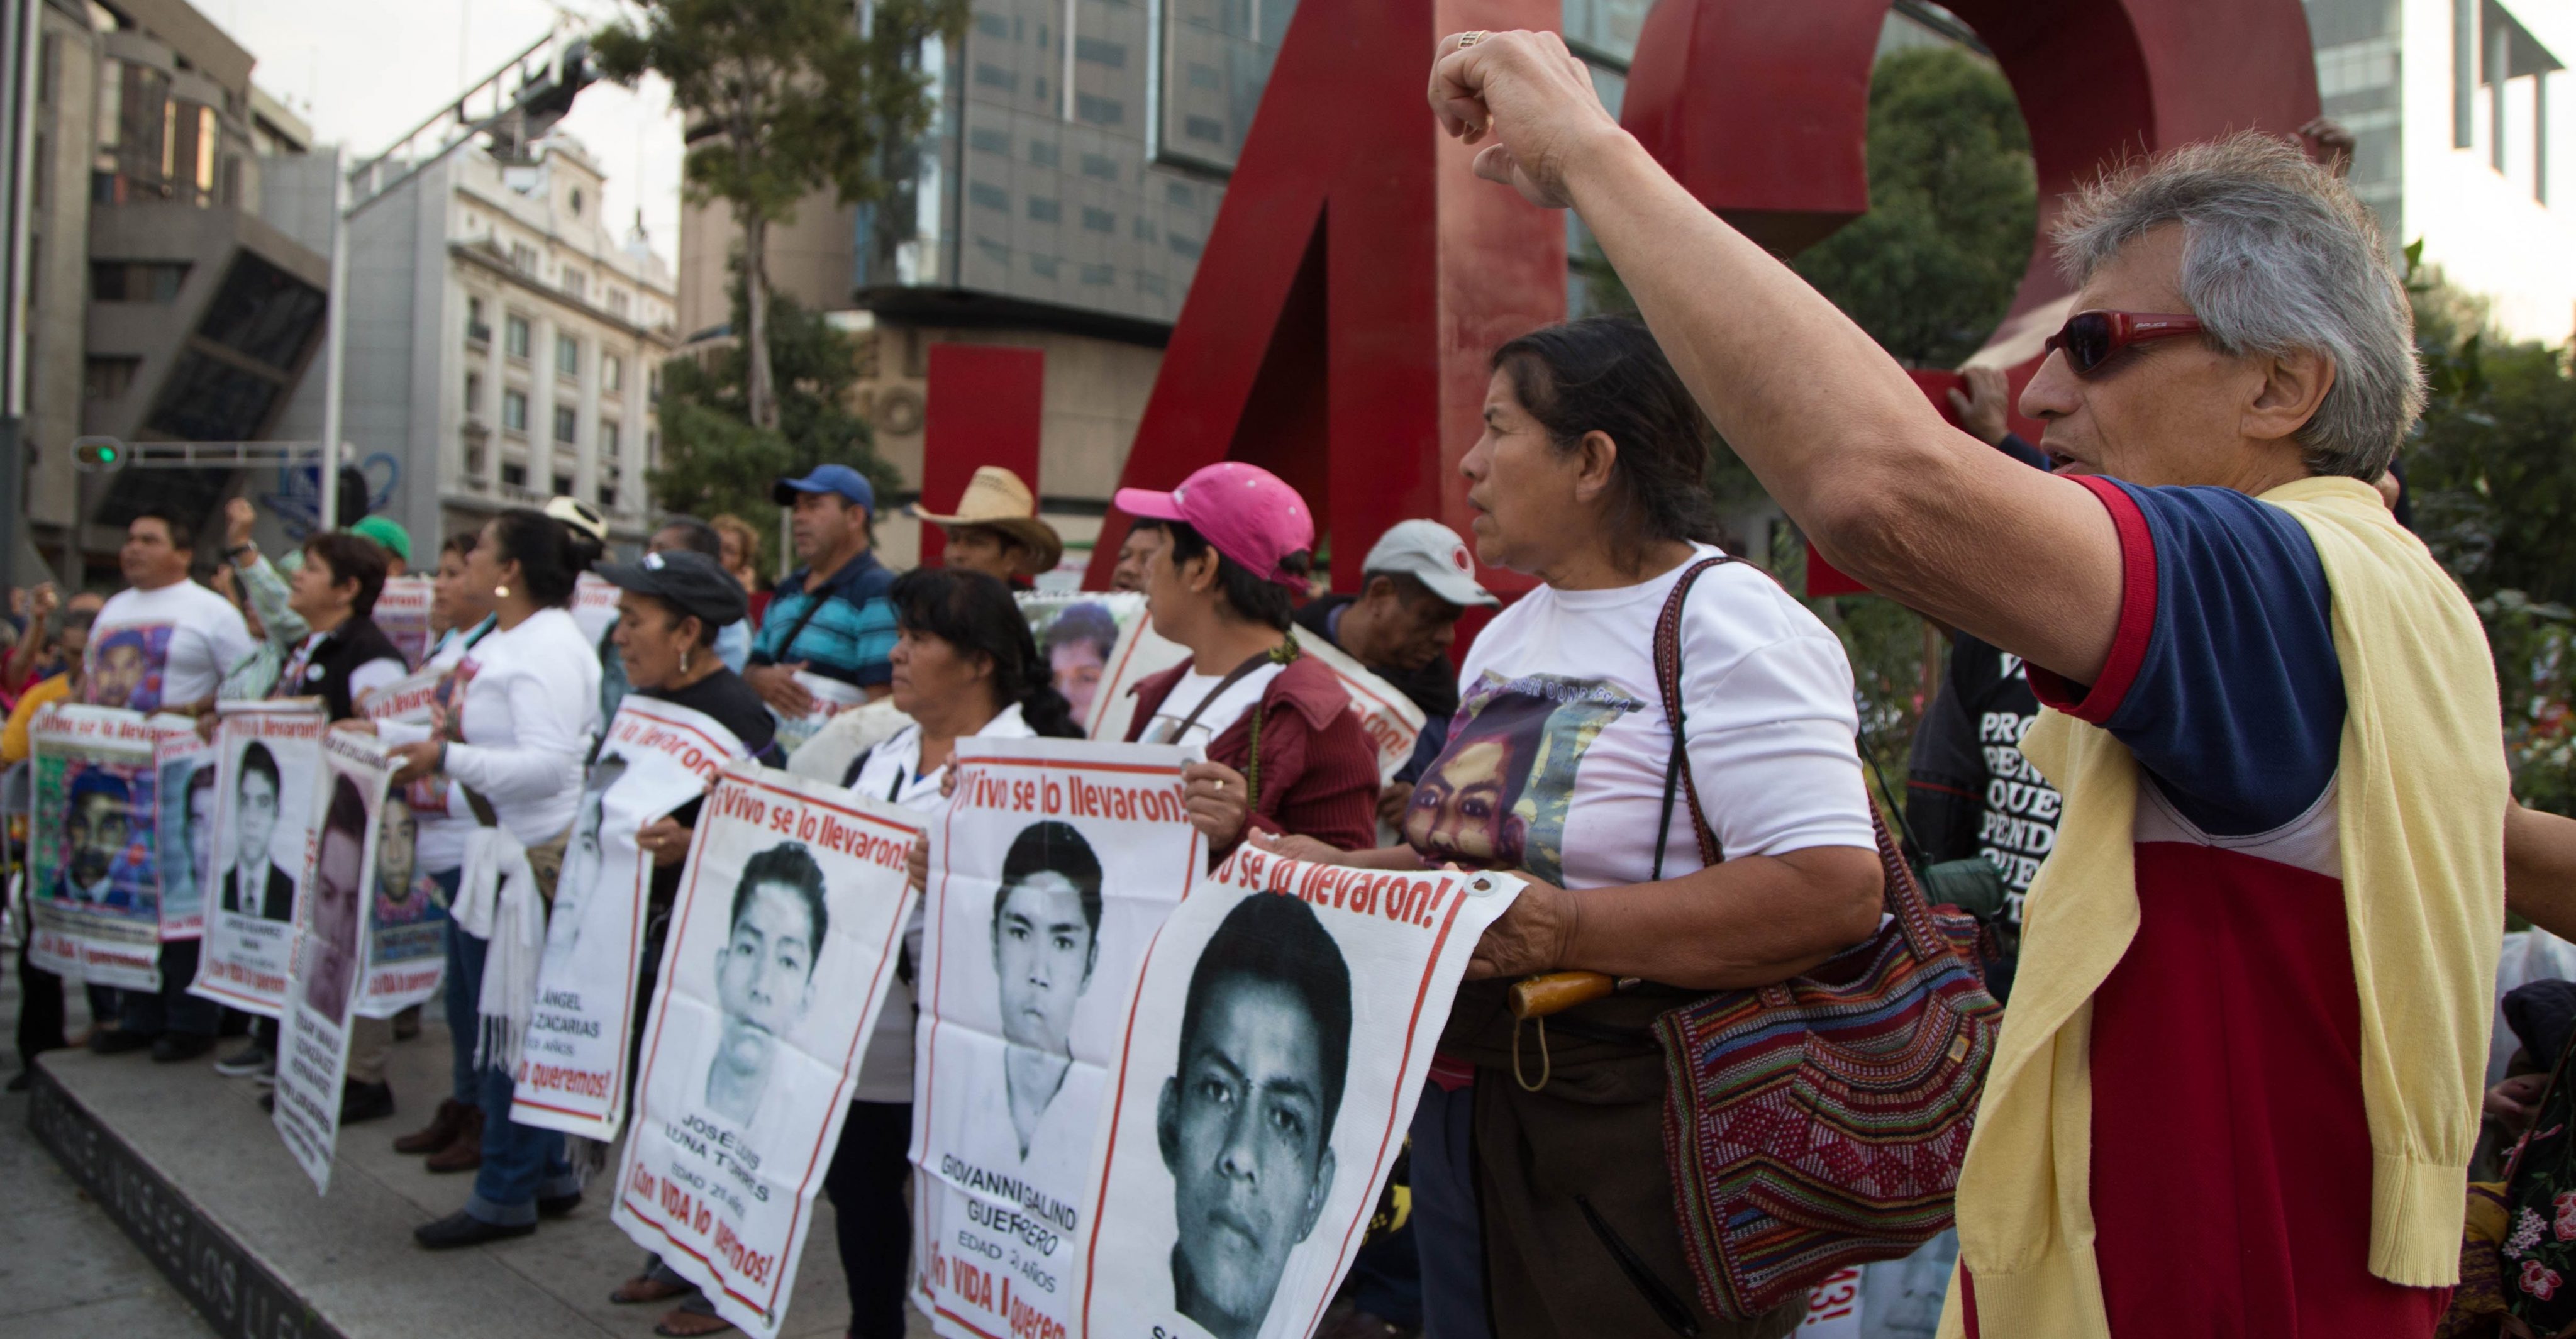 CIDH concluye que investigación de Ayotzinapa está incompleta